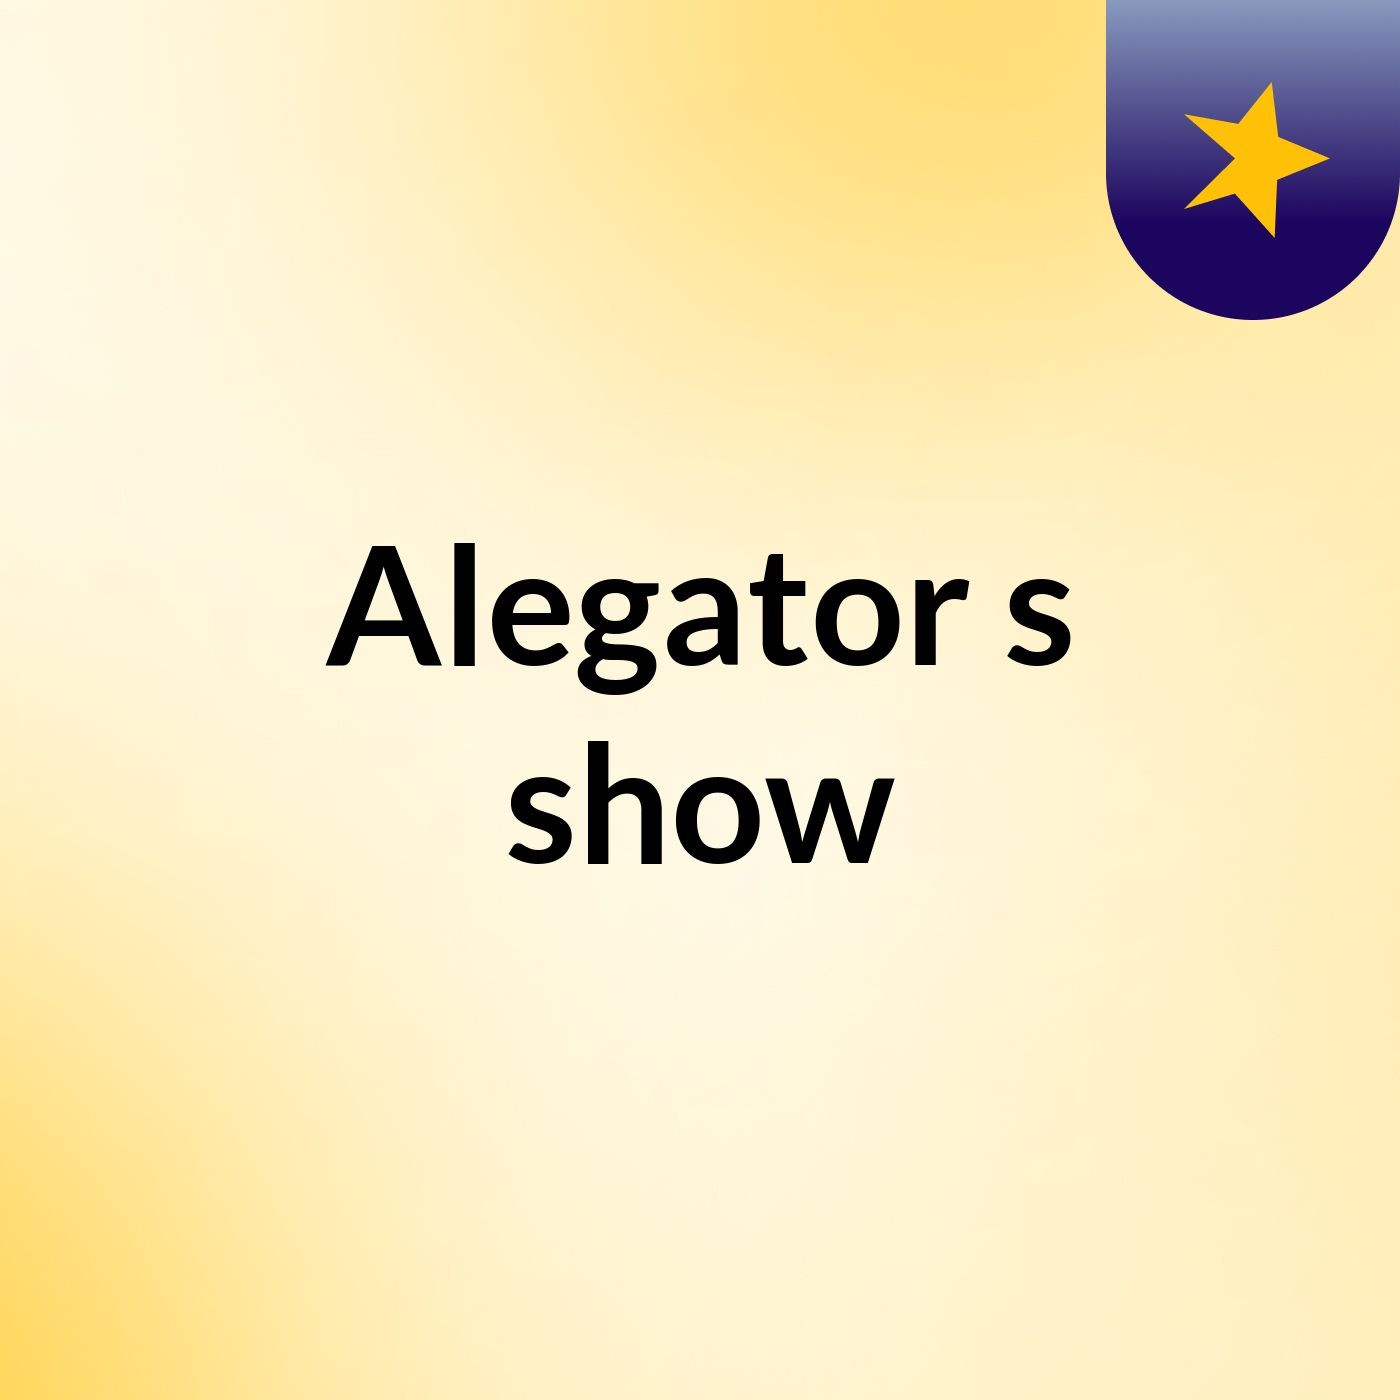 Alegator's show